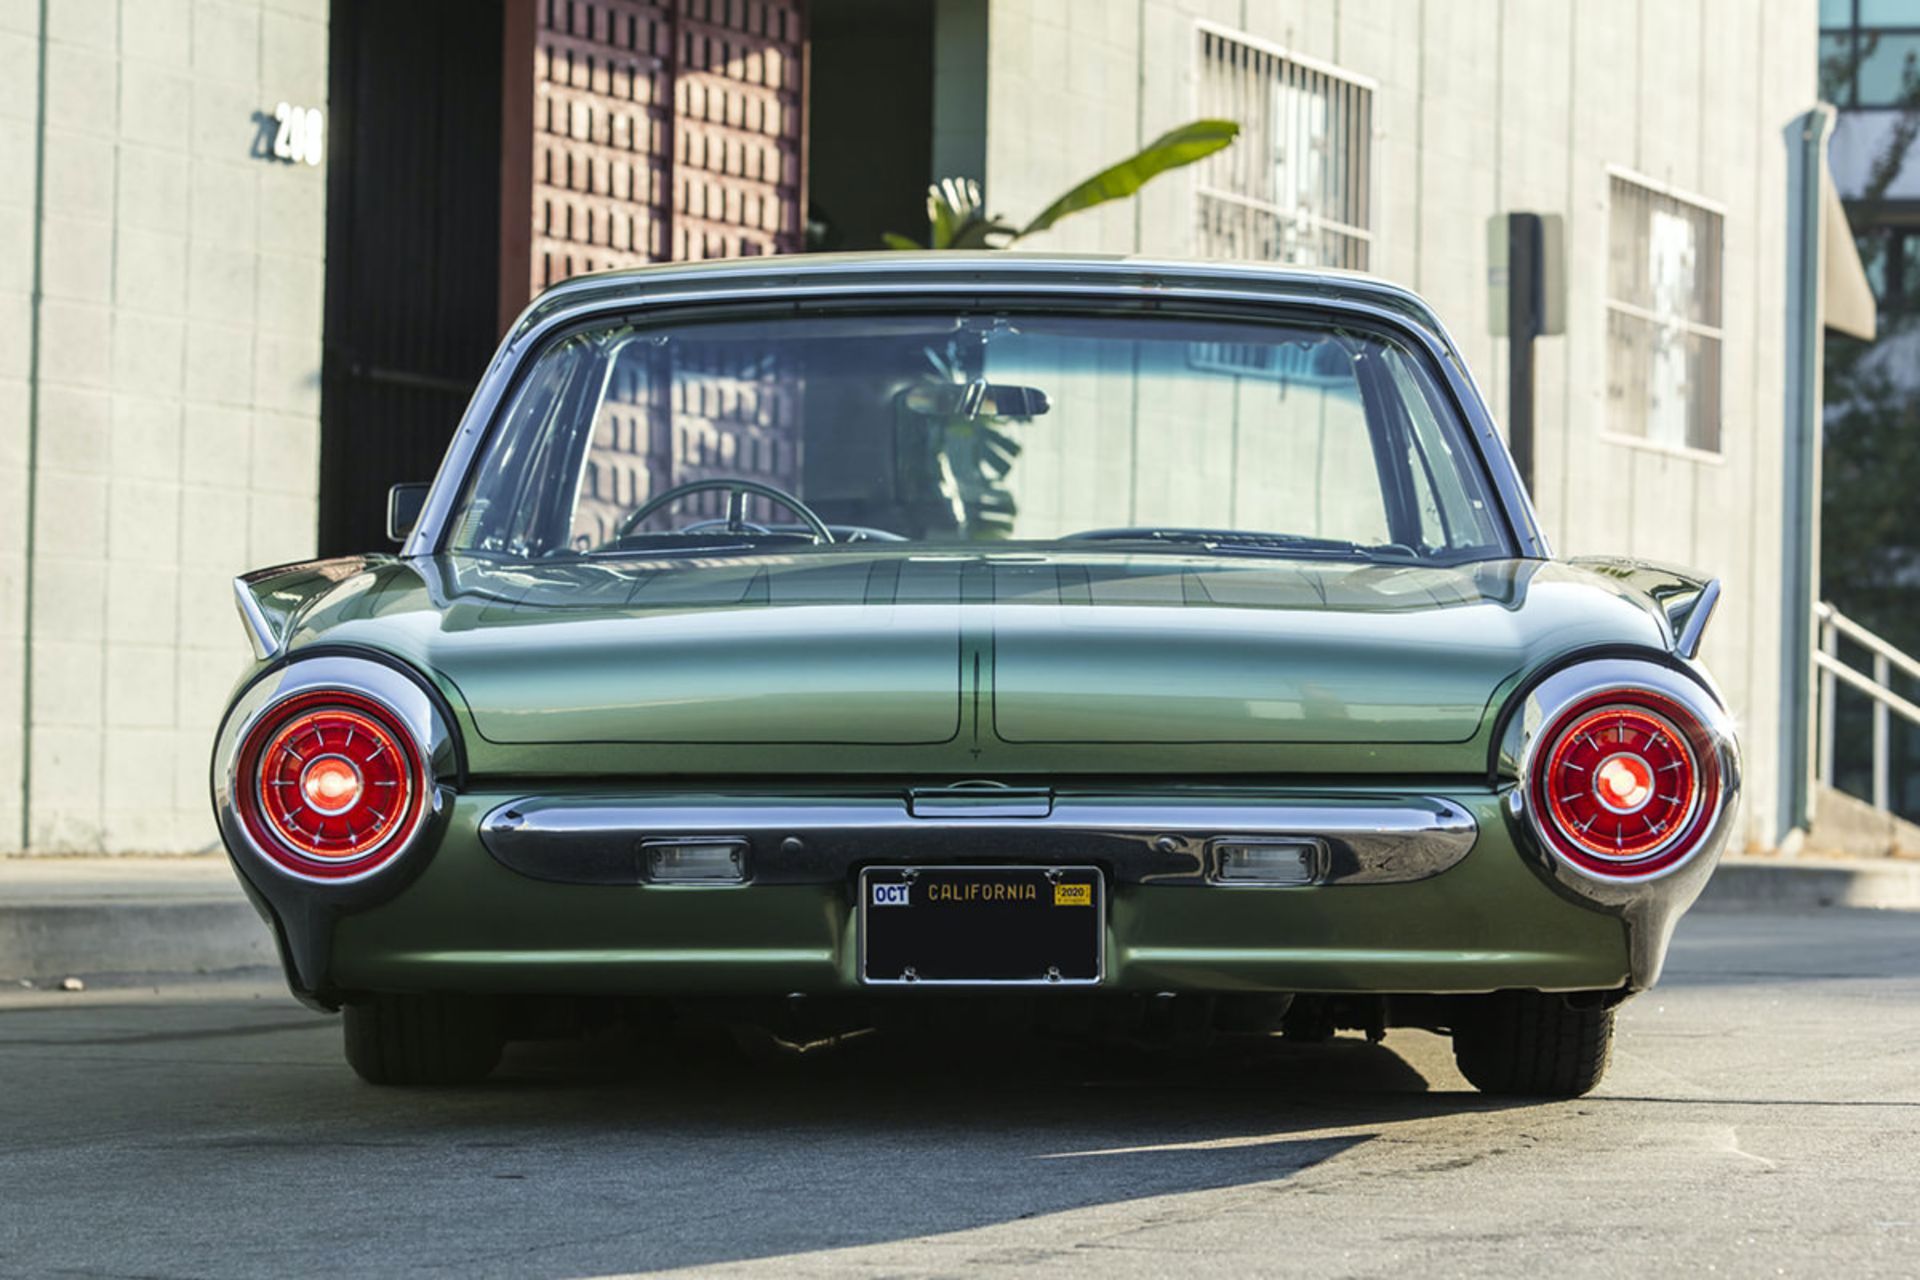 نمای عقب خودرو کلاسیک فورد تاندربرد / 1963 Ford Thunderbird سبز رنگ در کنار ساختمان